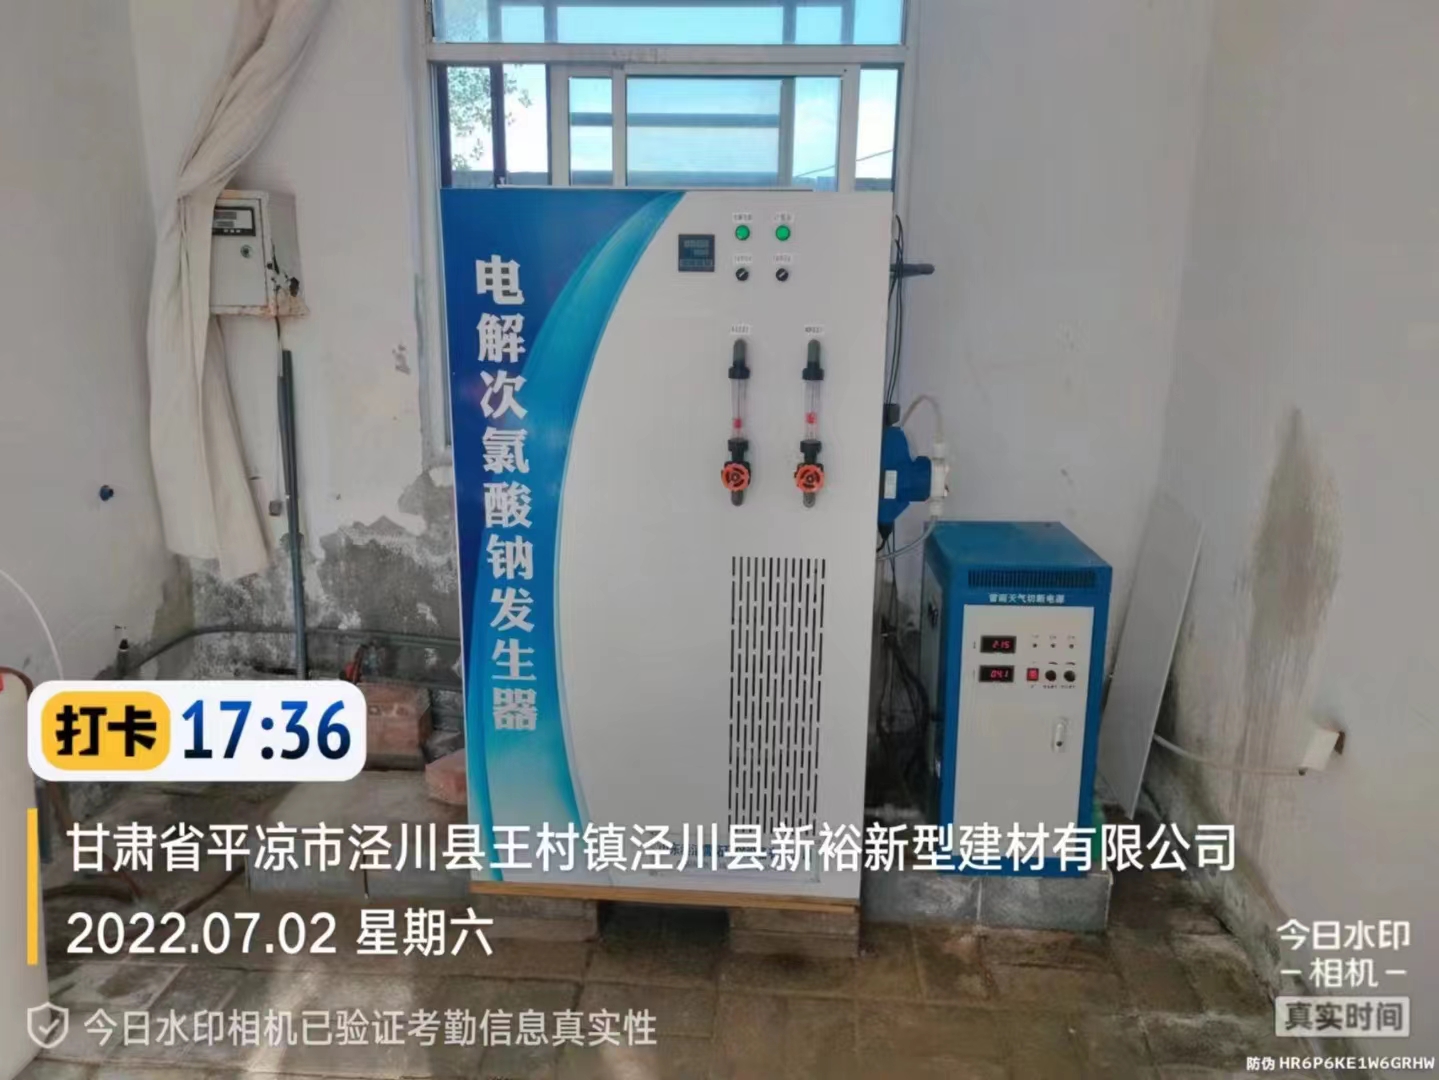 甘肃平凉市水厂采用我司200g/h次氯酸钠发生器进行自来水消毒